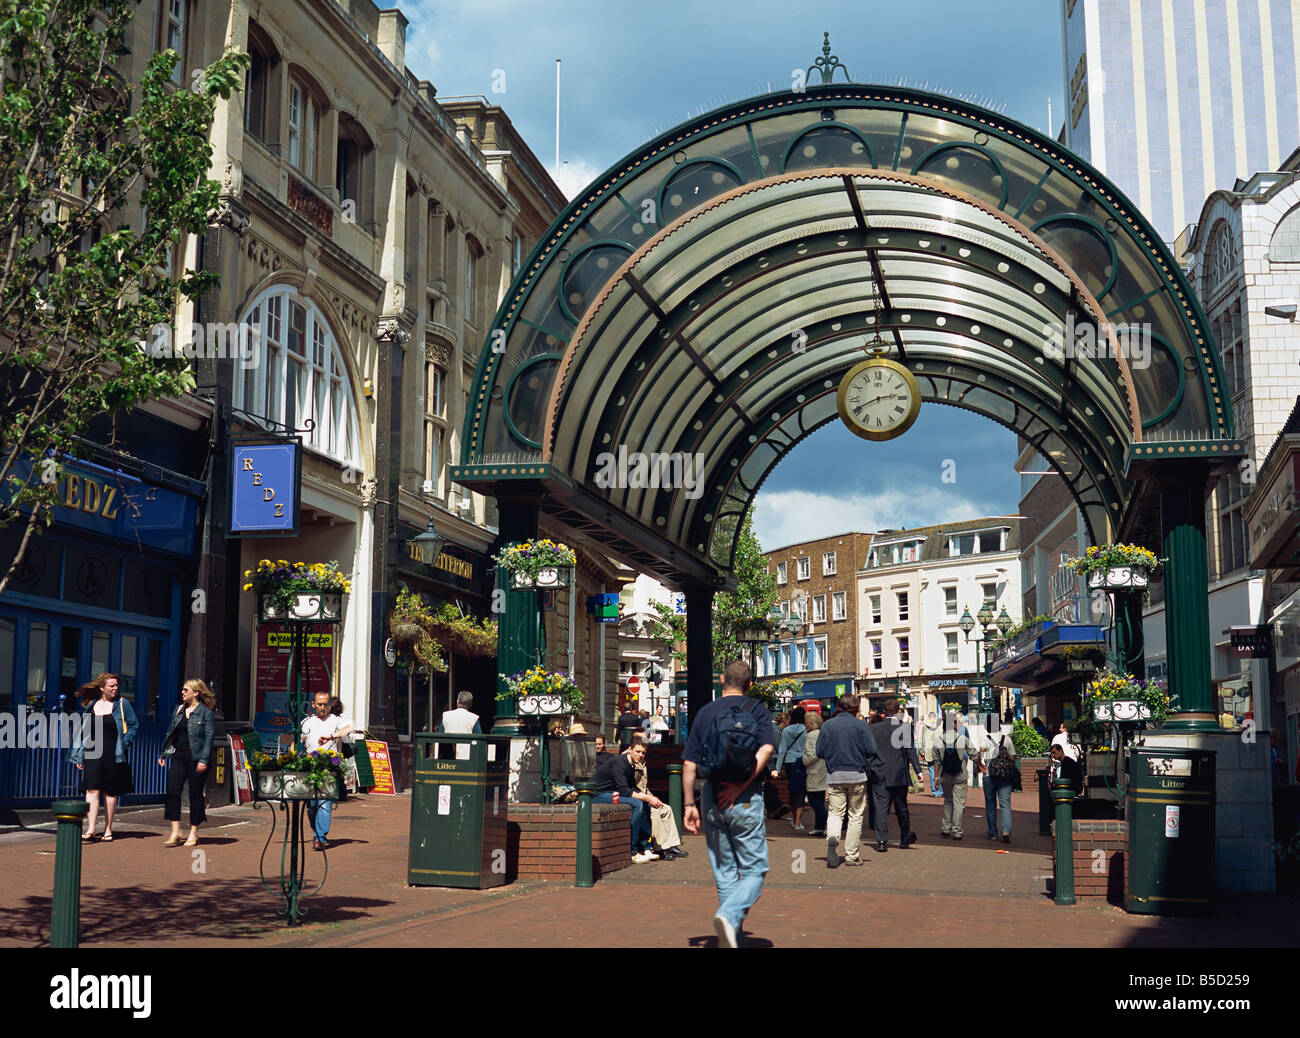 Ingresso alla galleria shopping con orologio su una strada pedonale sulla piazza, Bournemouth Dorset, Inghilterra, Europa Foto Stock